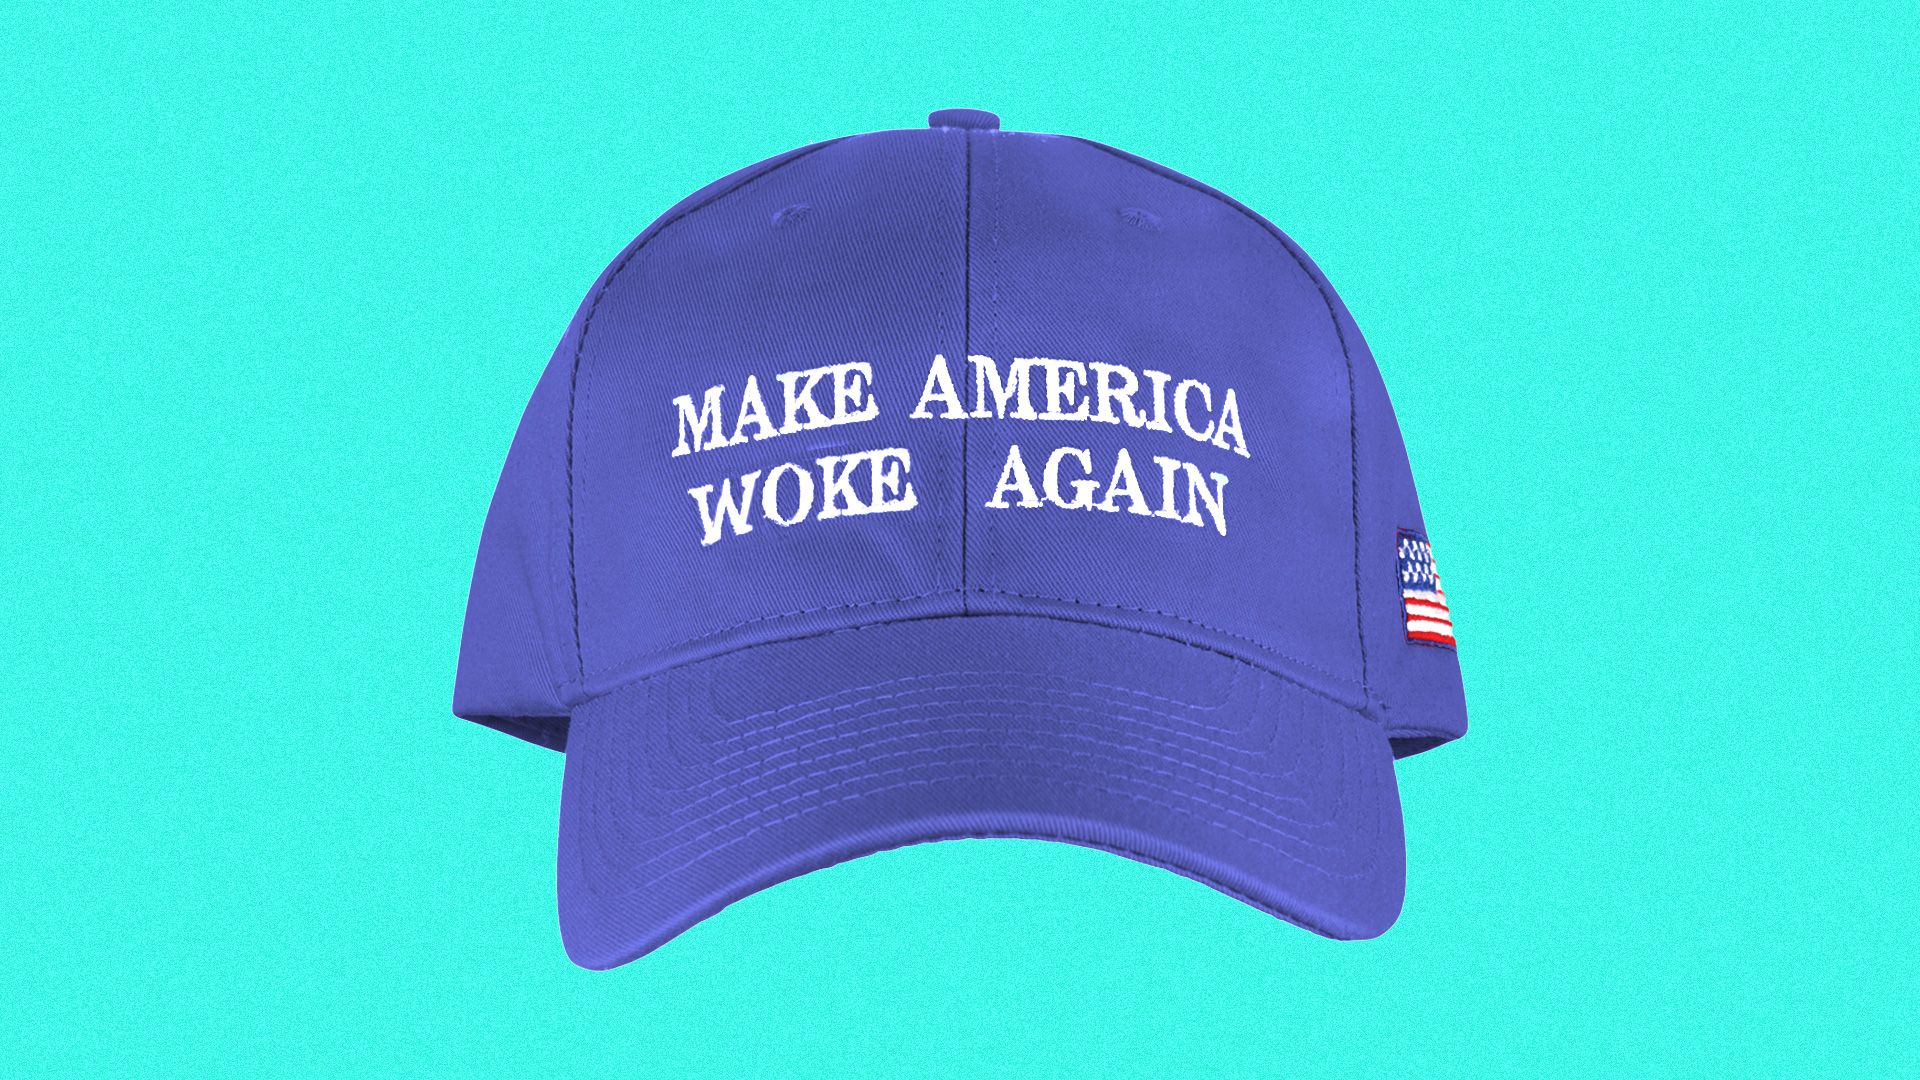  A hat reading 'Make America Woke Again'